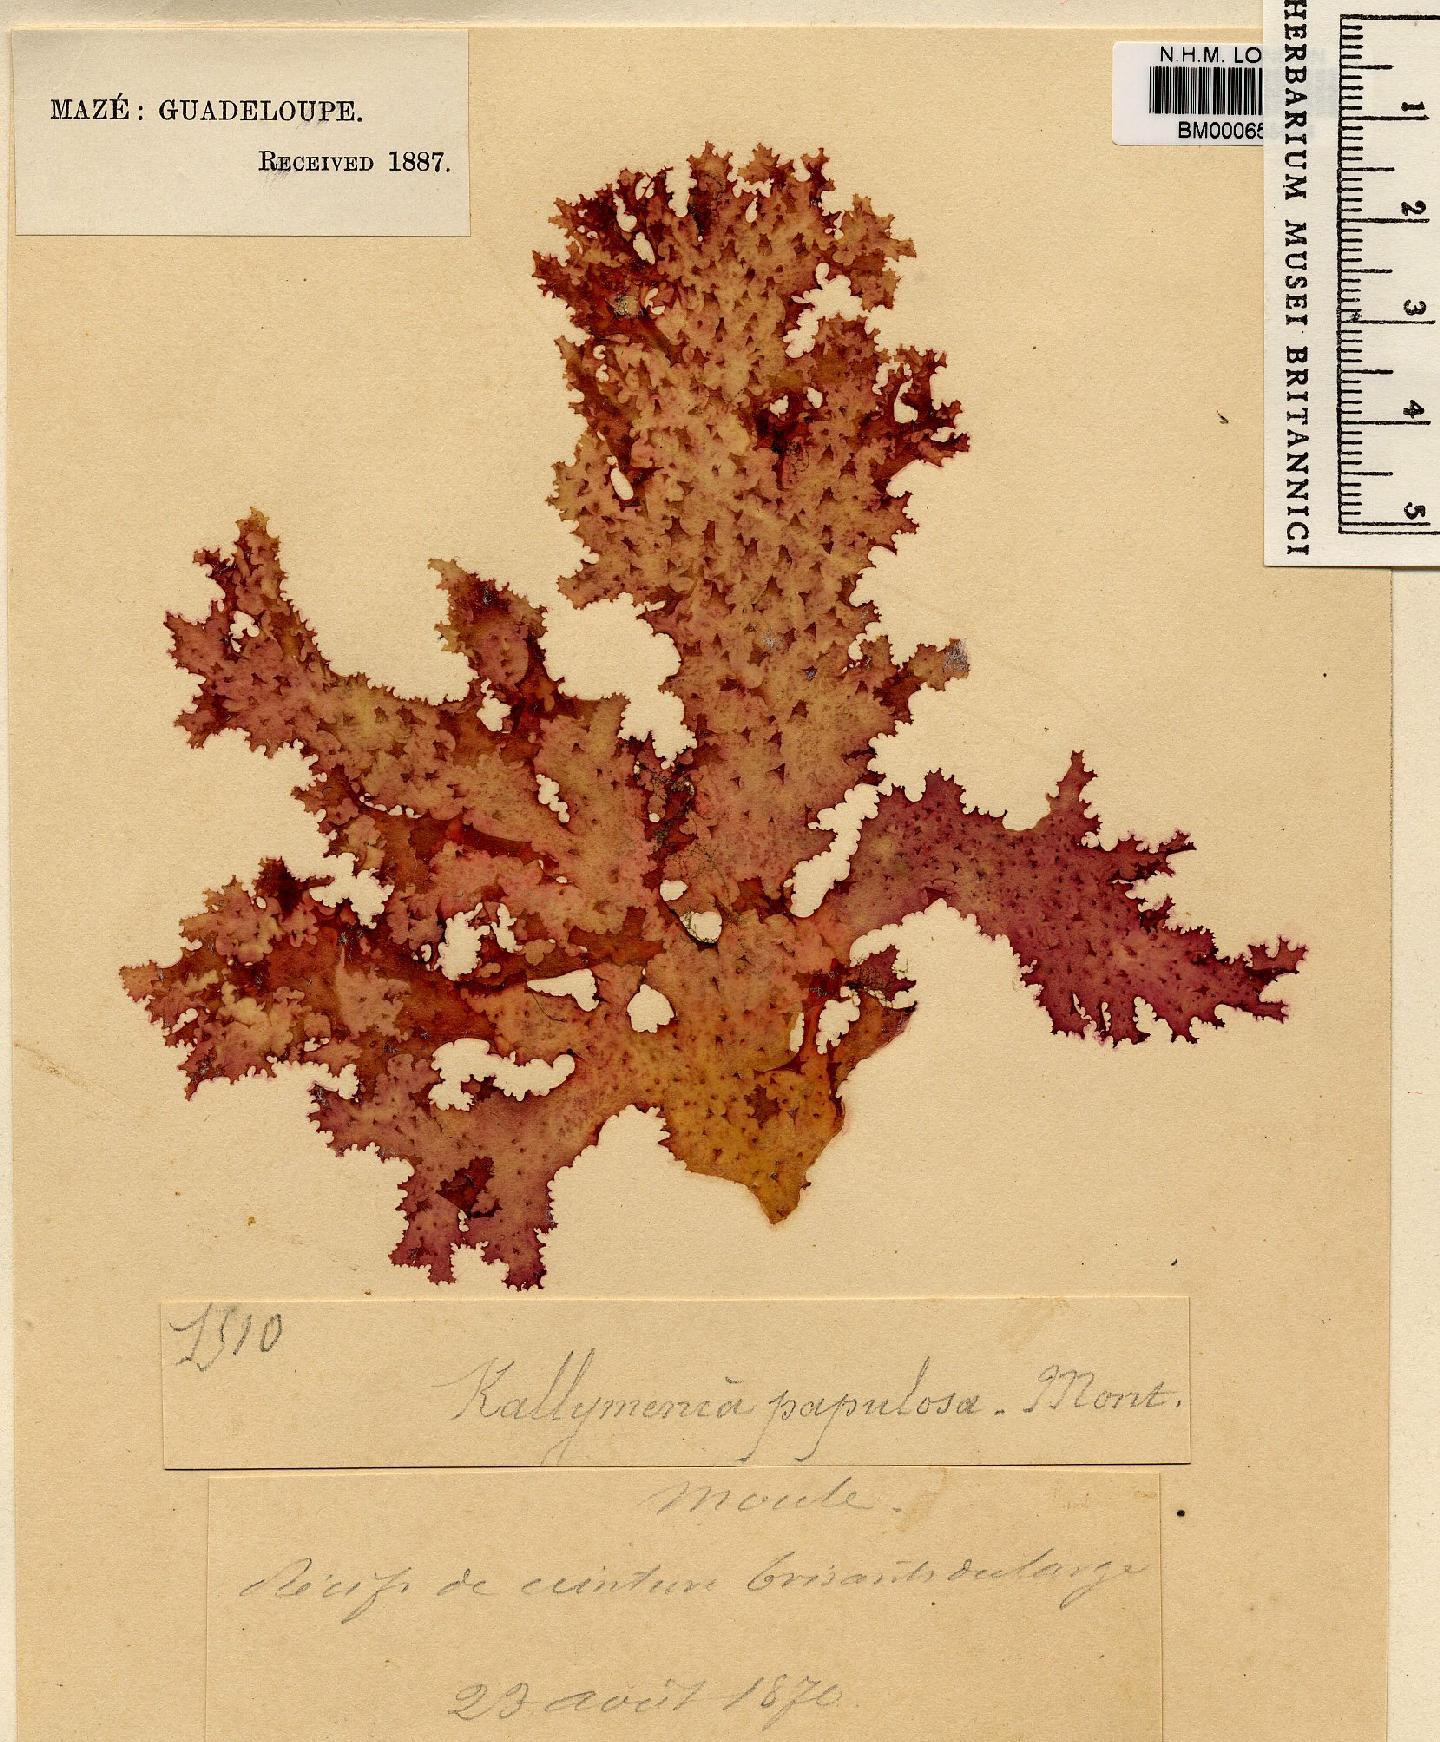 To NHMUK collection (Kallymenia papulosa Mont.; NHMUK:ecatalogue:4857556)